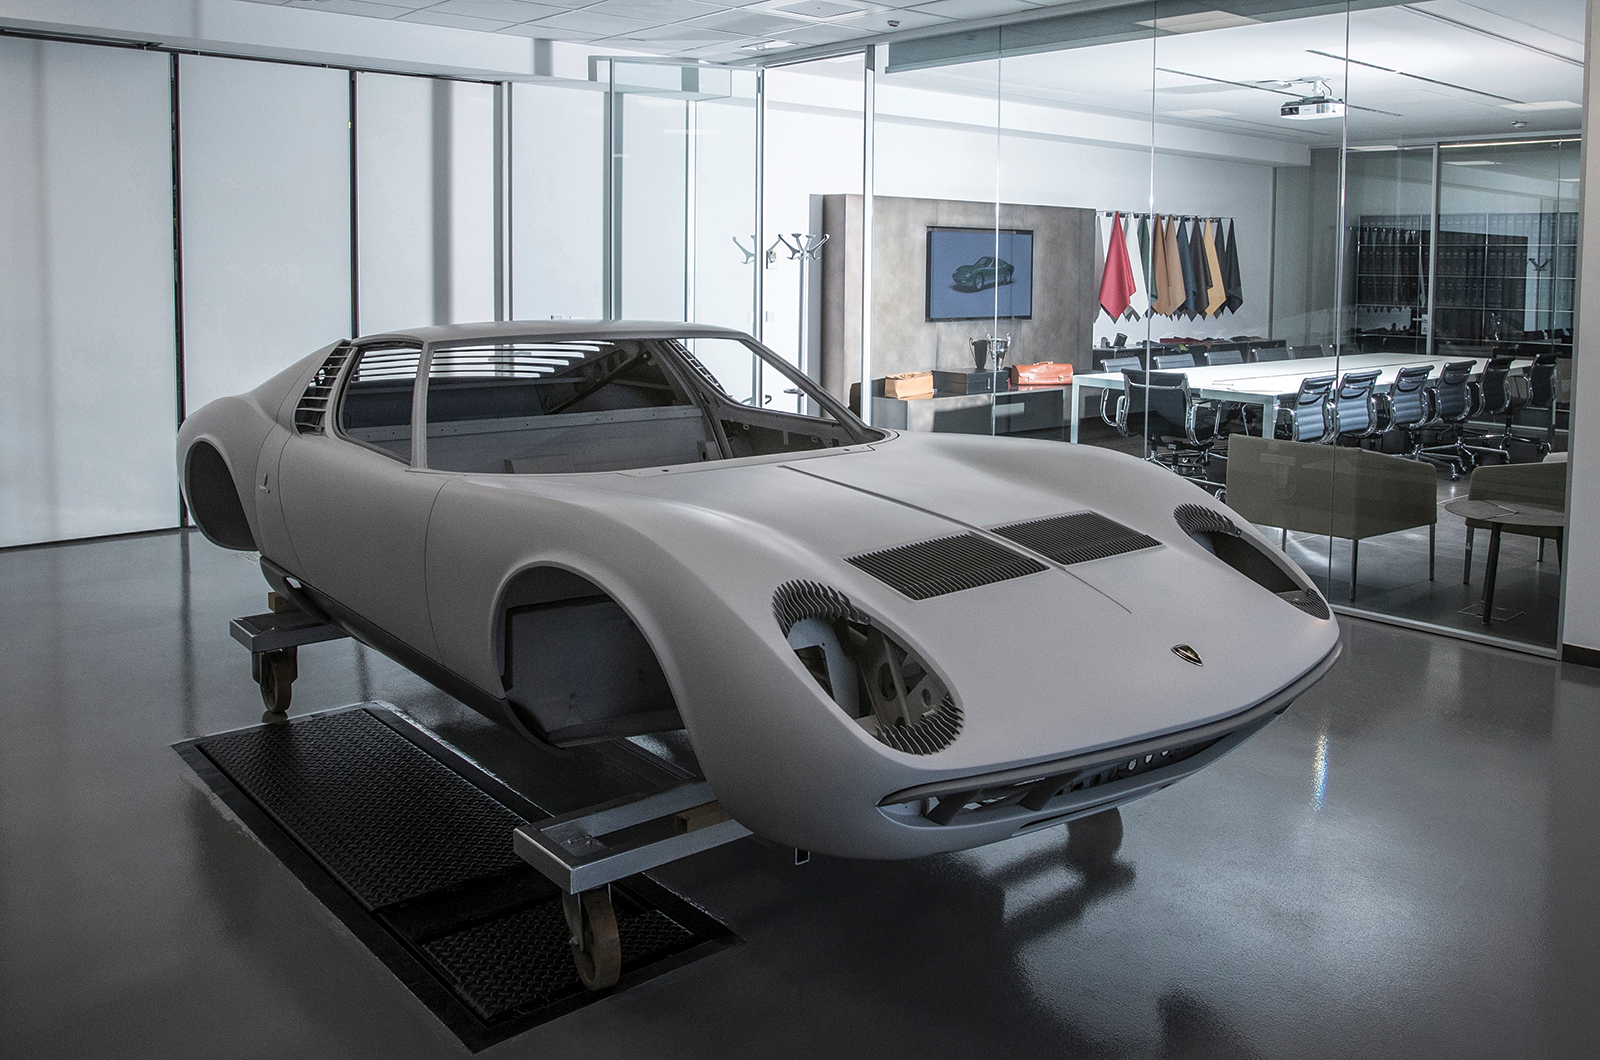 Classic & Sports Car – The specialist: Lamborghini Polo Storico